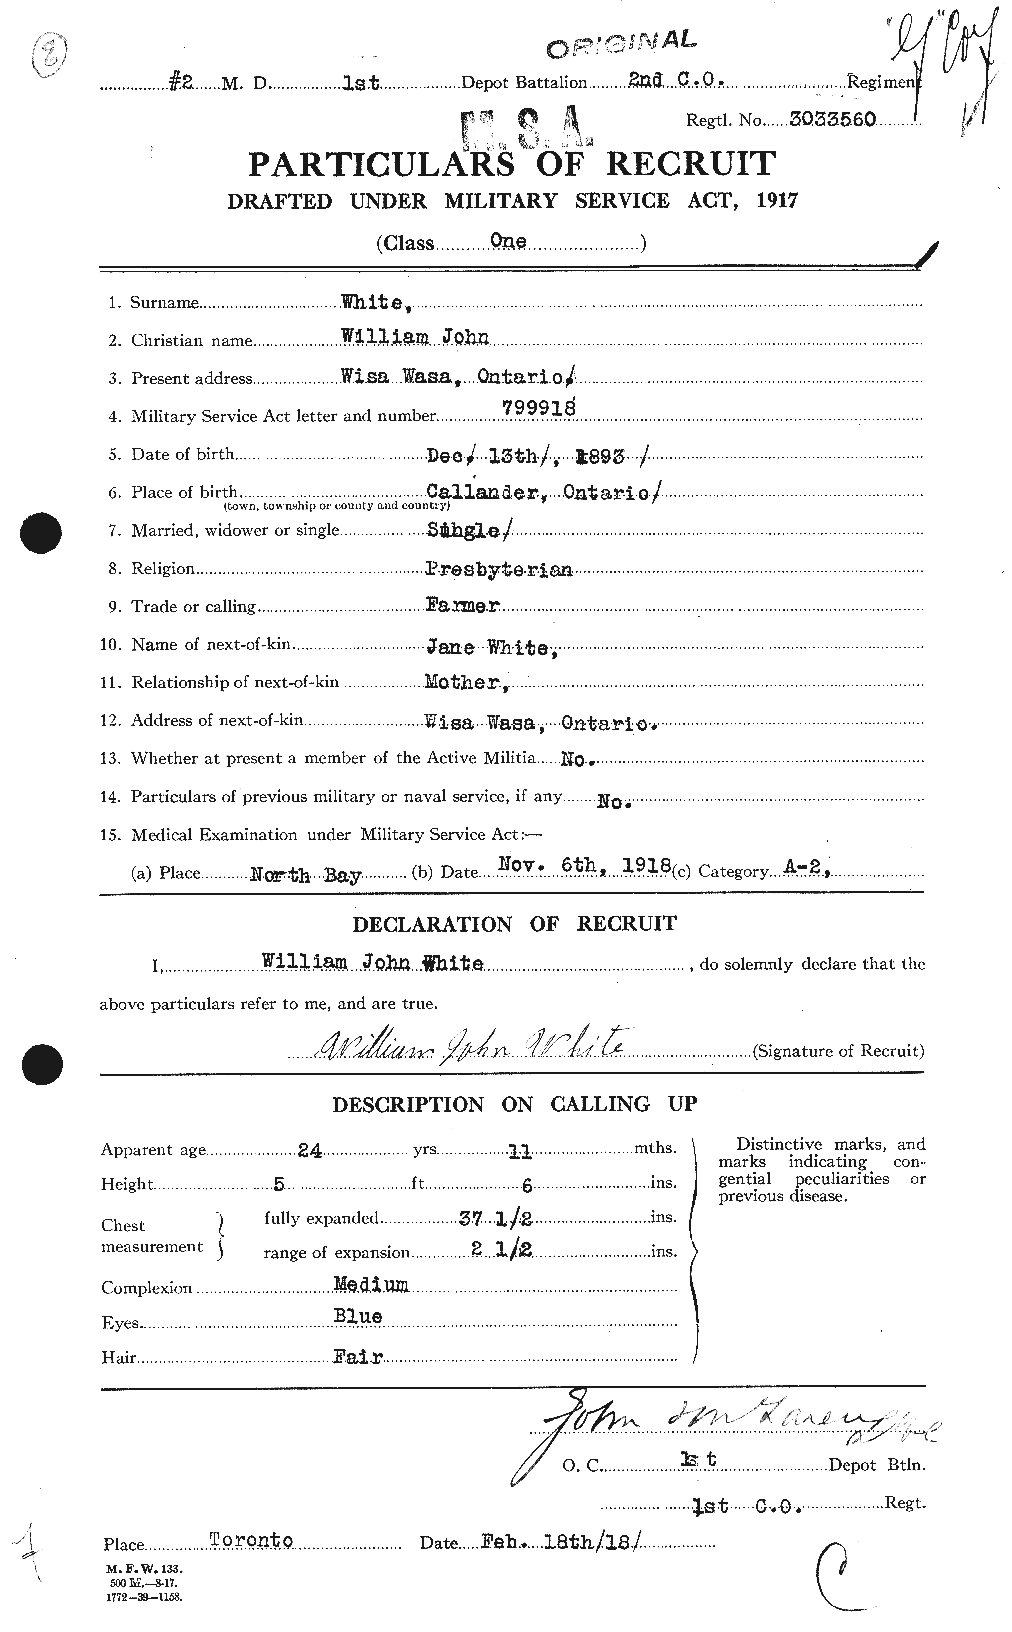 Dossiers du Personnel de la Première Guerre mondiale - CEC 669052a